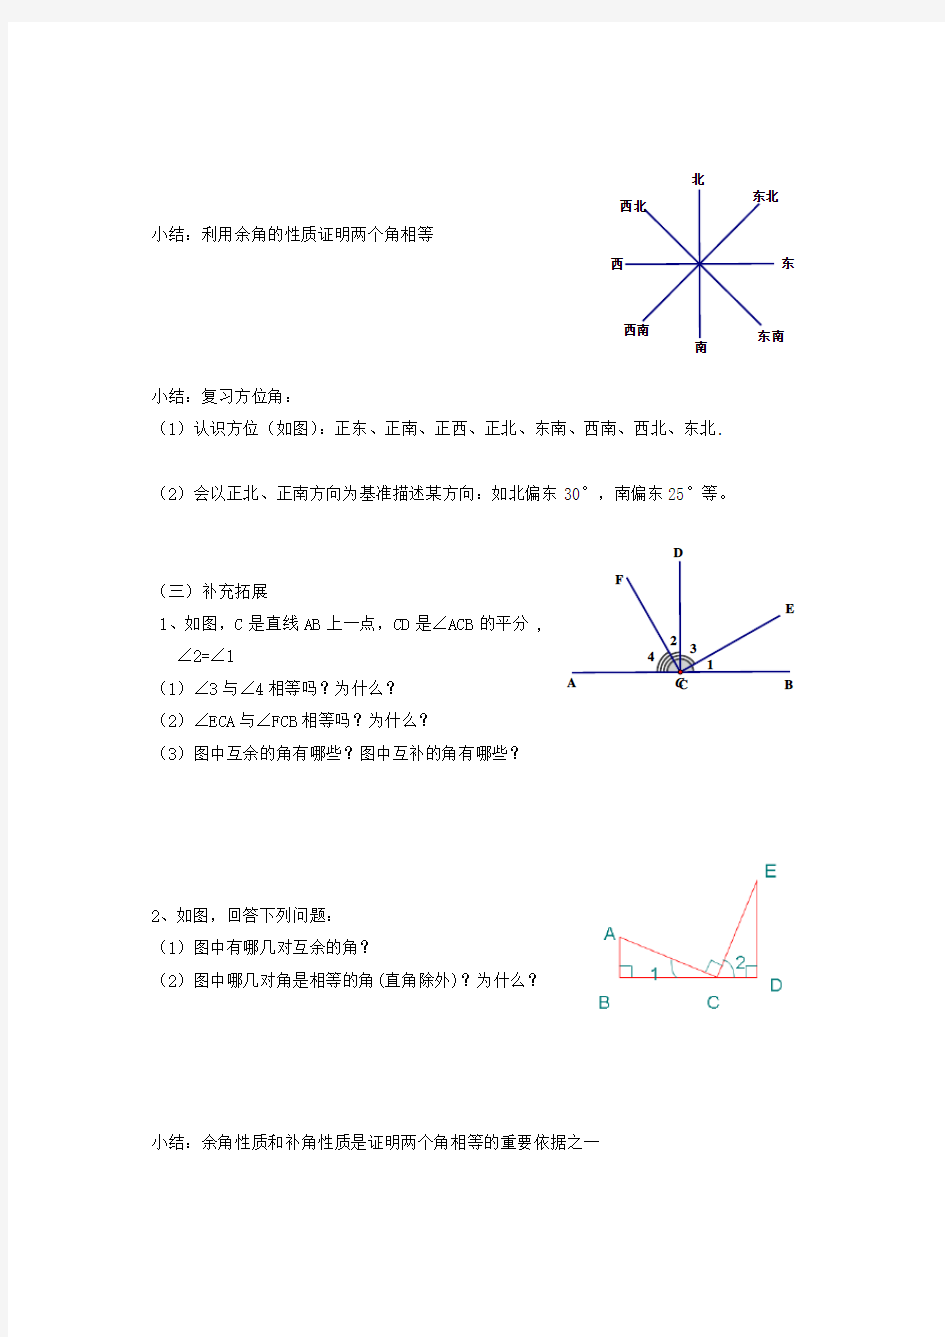 【数学】七年级上册数学-余角和补角(教案及练习题) 